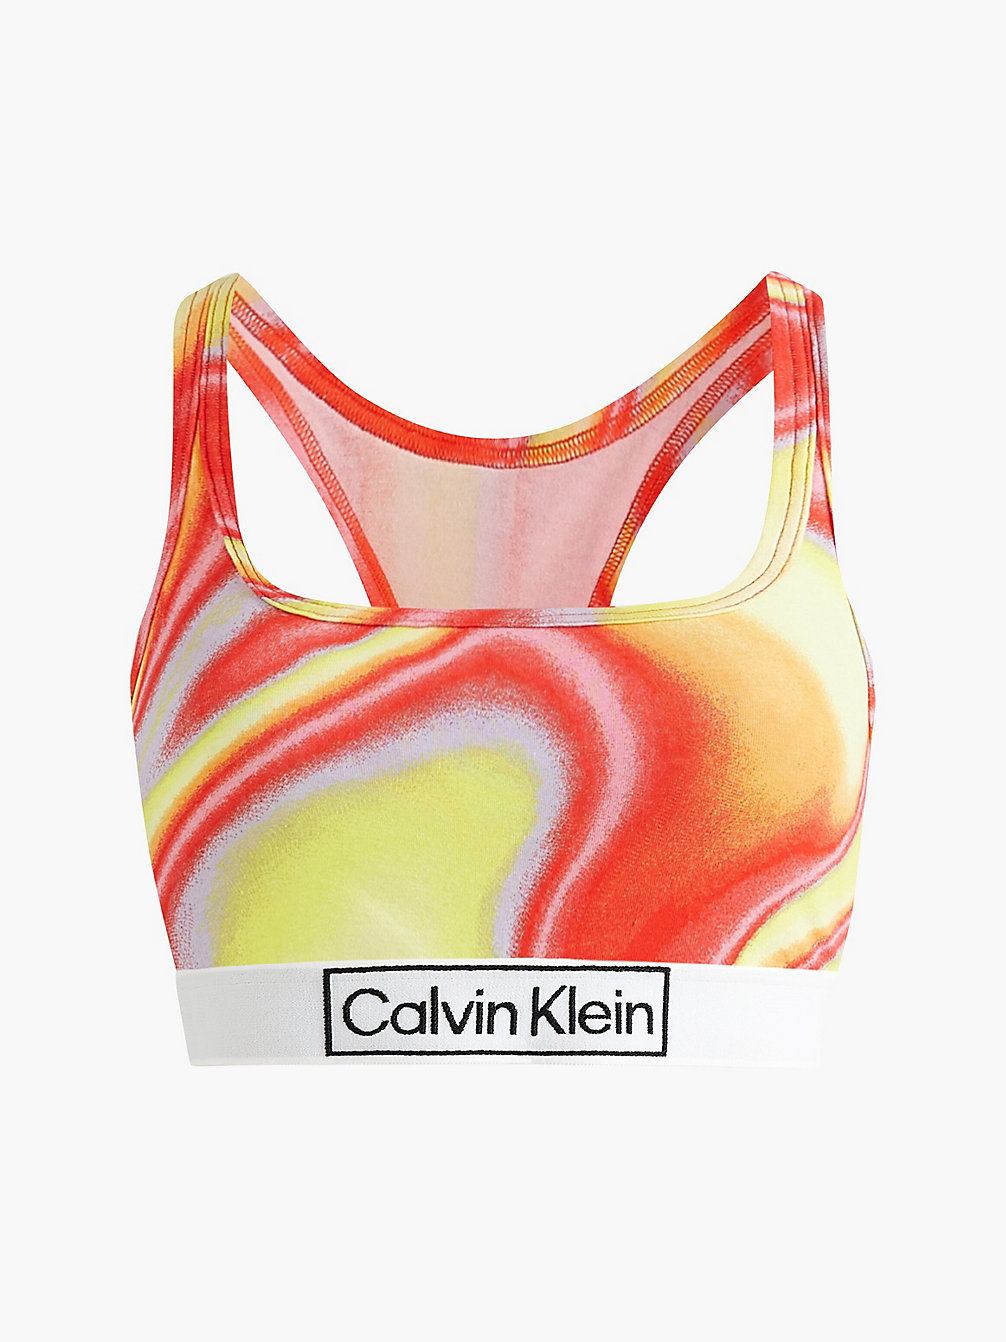 IRIDESCENT PRINT_TUSCAN TERRA COTTA Bralette - Pride undefined women Calvin Klein